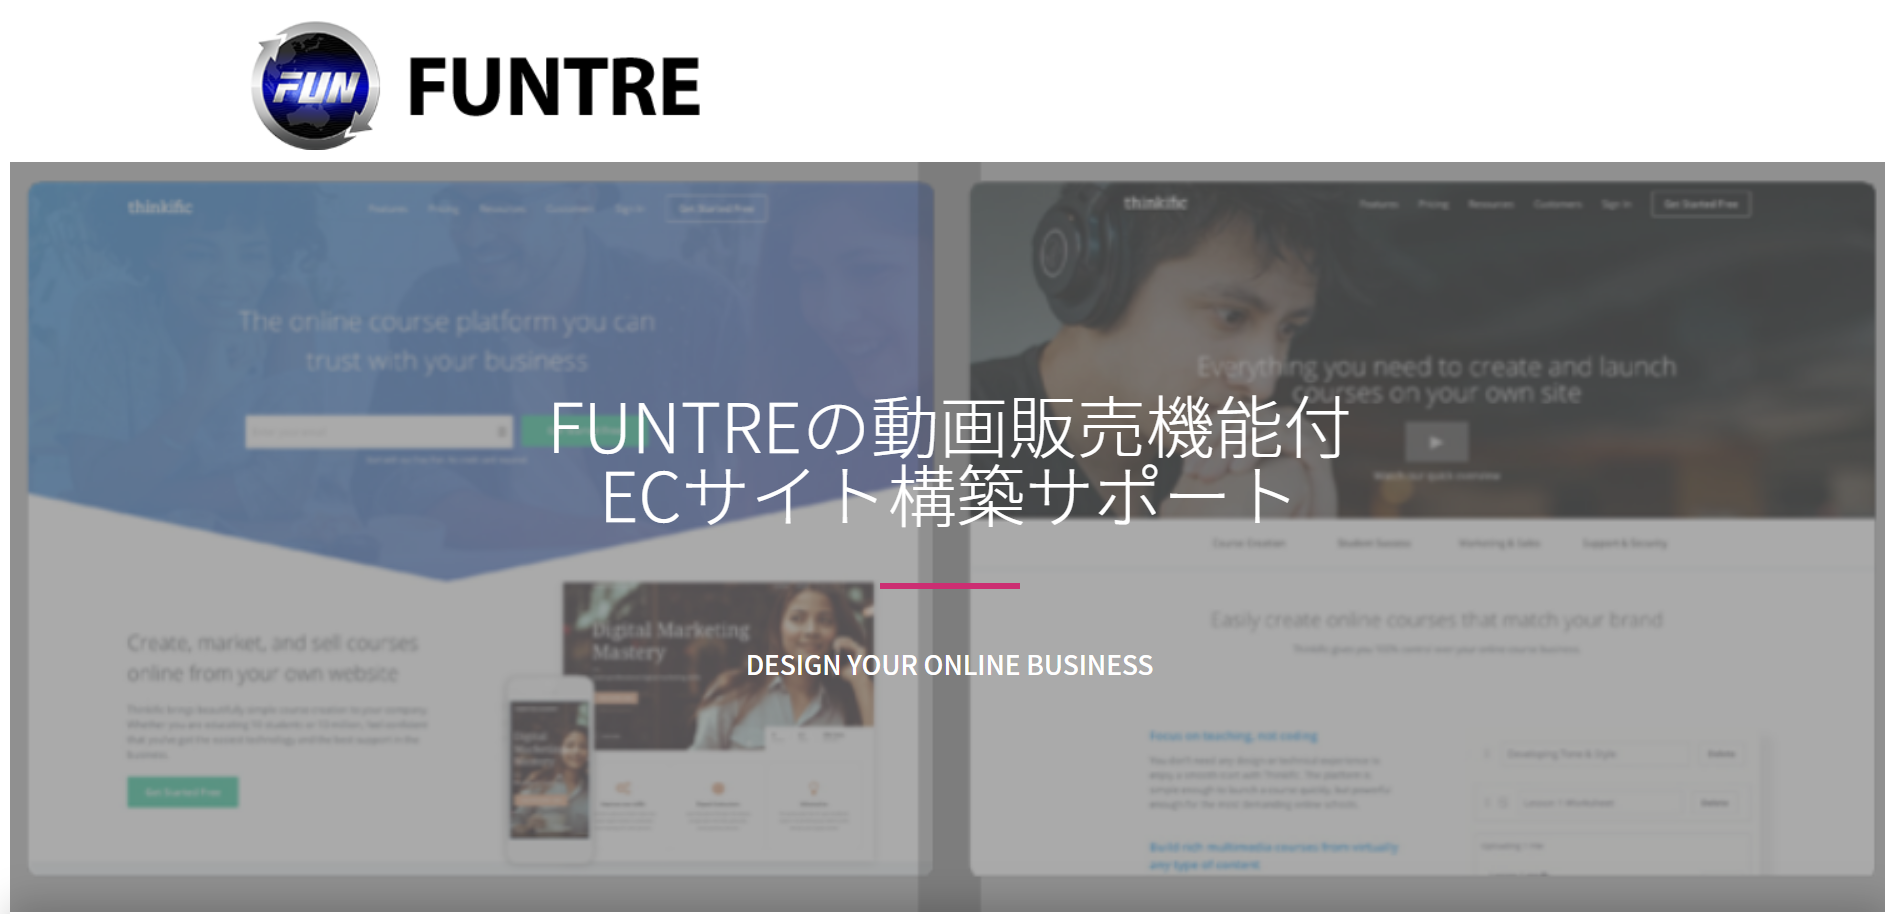 FunTre株式会社のFunTre株式会社:メール配信システムサービス